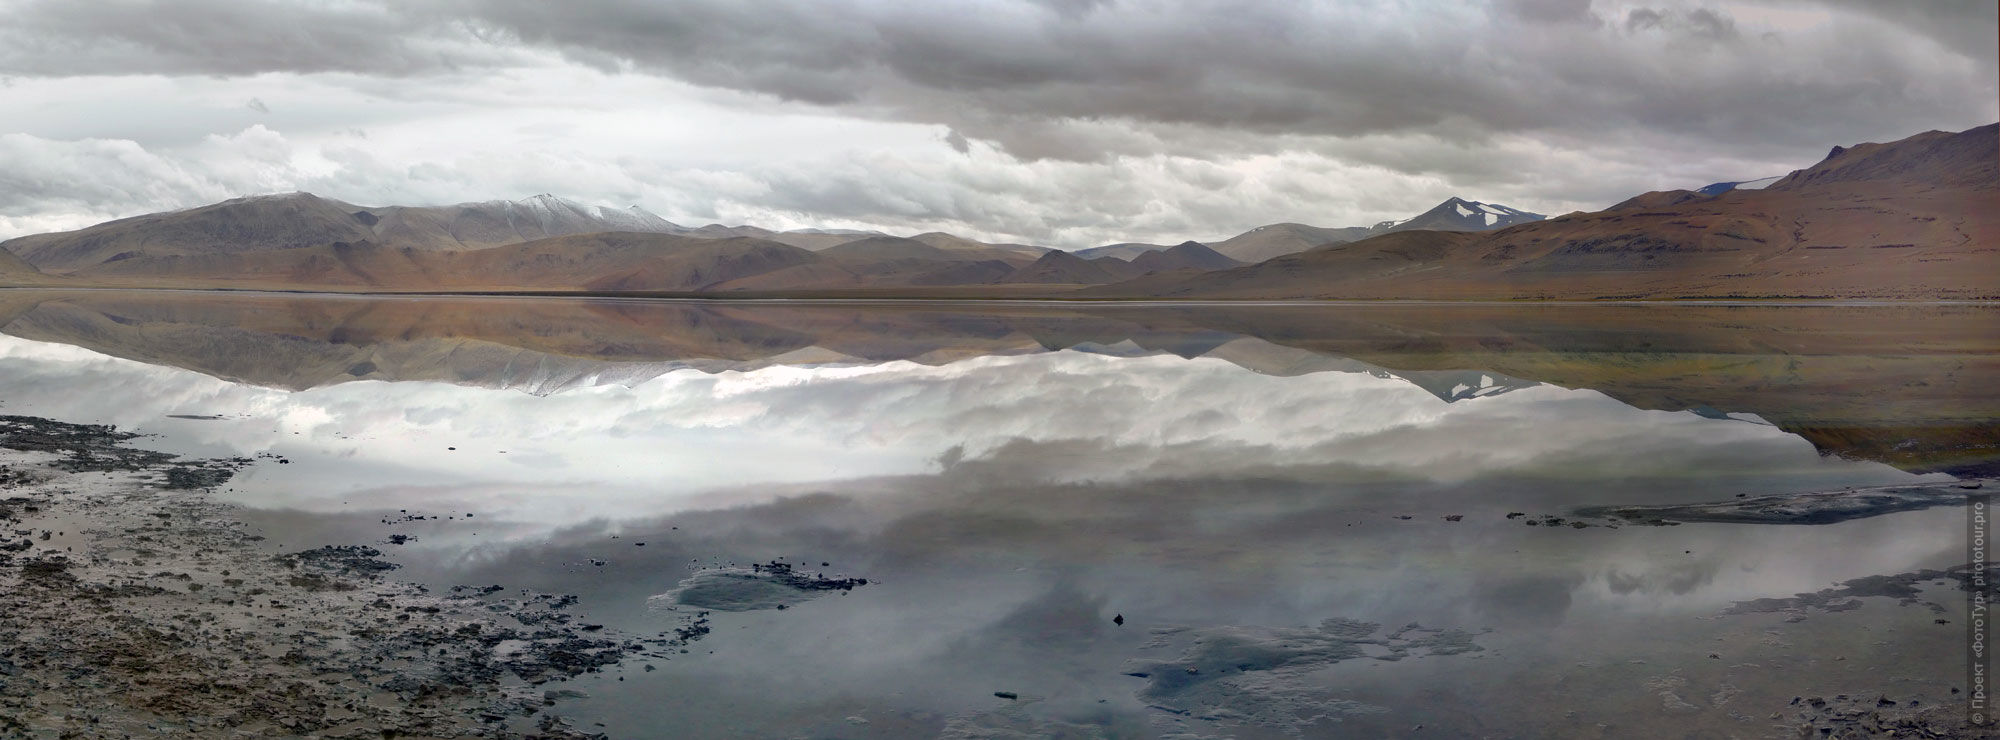 Долина Нубра, Ладакх, Тибет.  Фототур Легенды Тибета.